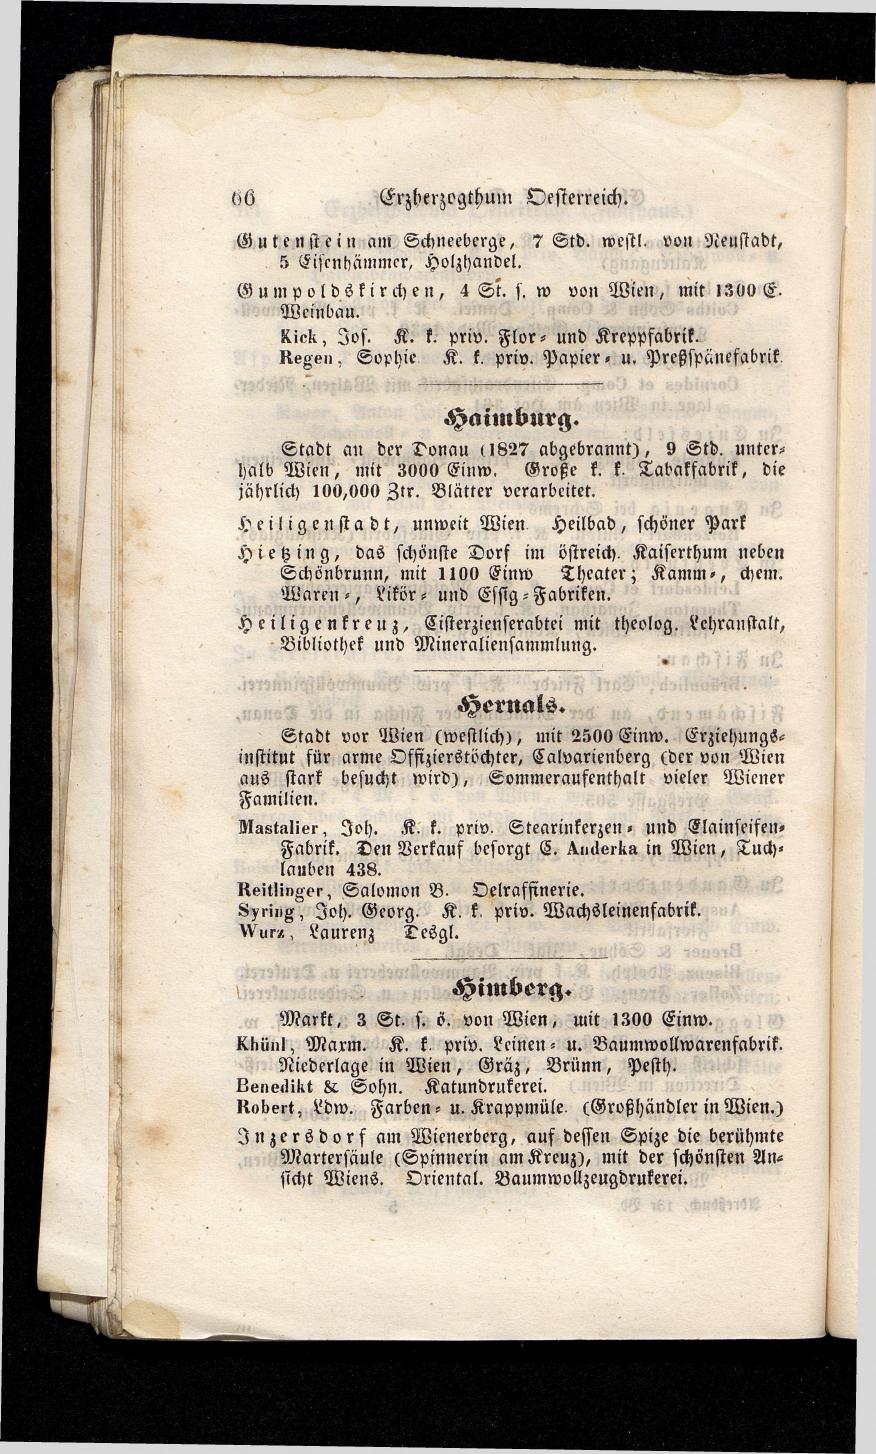 Grosses Adressbuch der Kaufleute. No. 13. Oesterreich ober u. unter der Enns 1844 - Seite 70